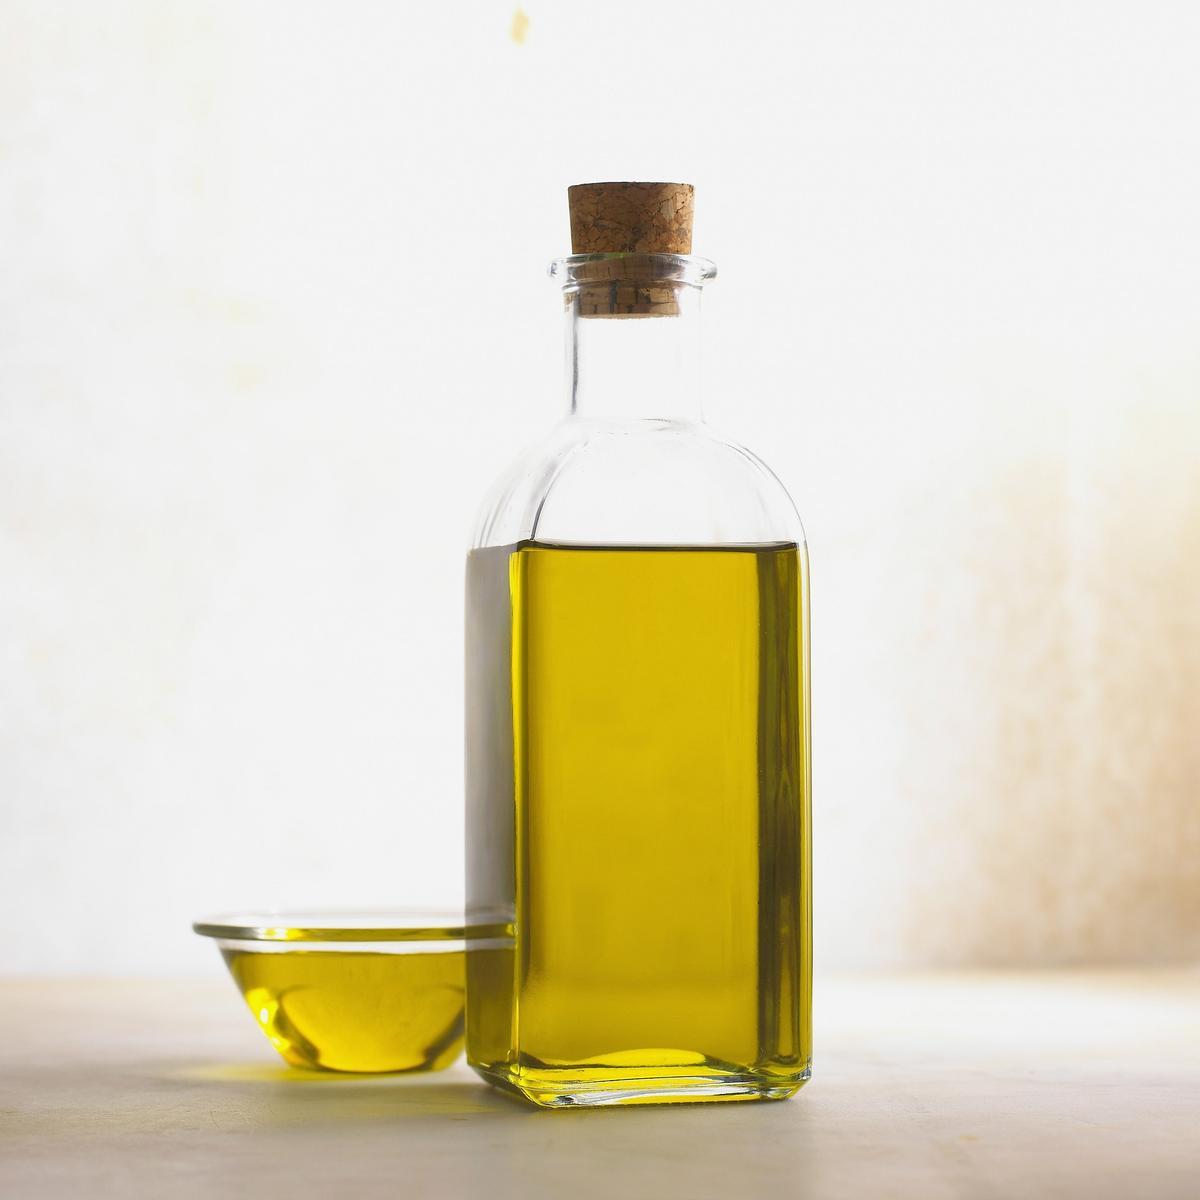 Los beneficios del aceite de oliva son incalculables